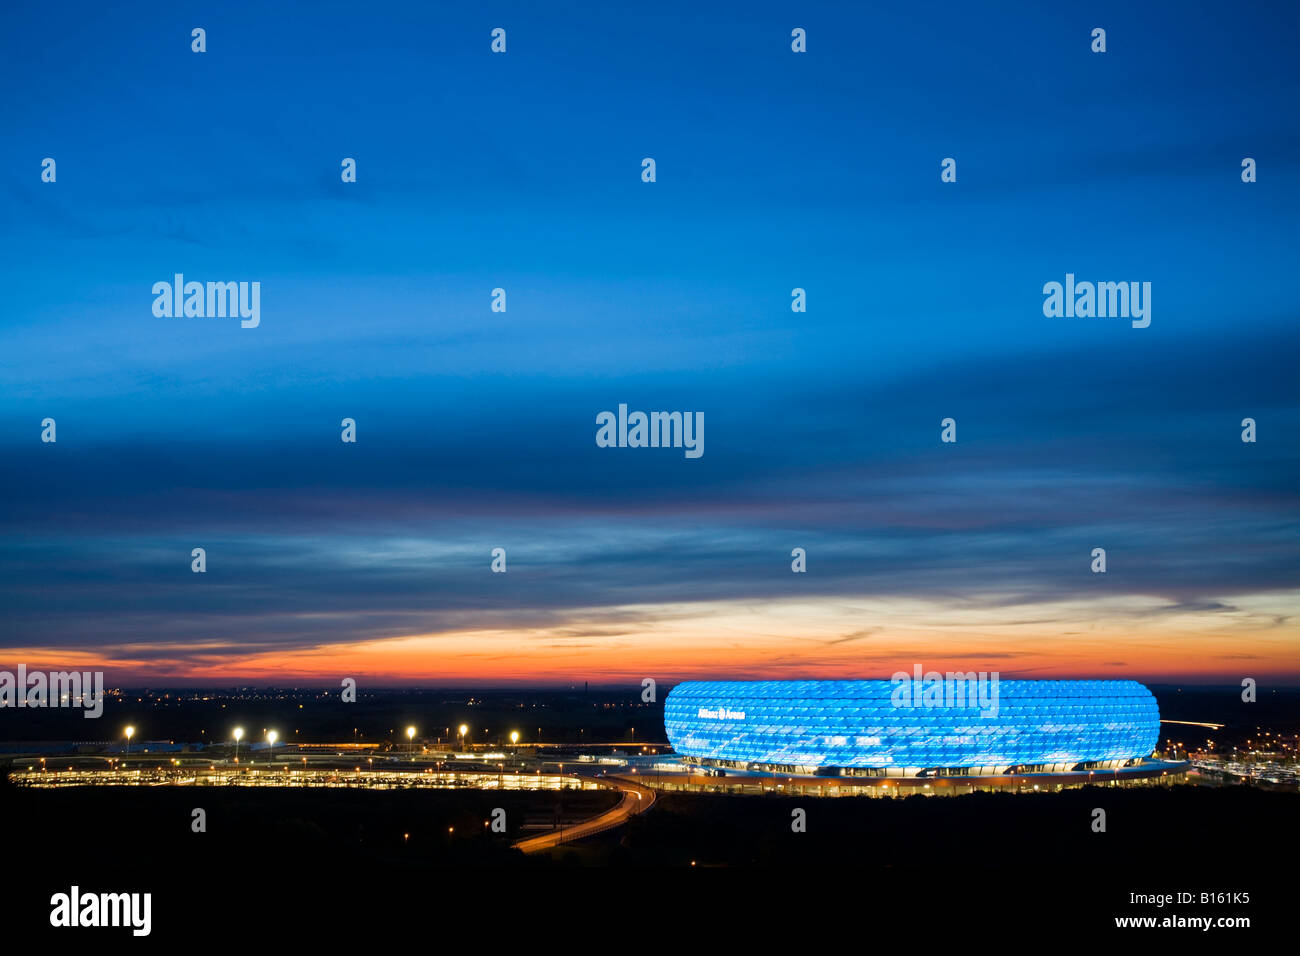 In Germania, in Baviera, Monaco di Baviera, Allianz Arena Foto Stock